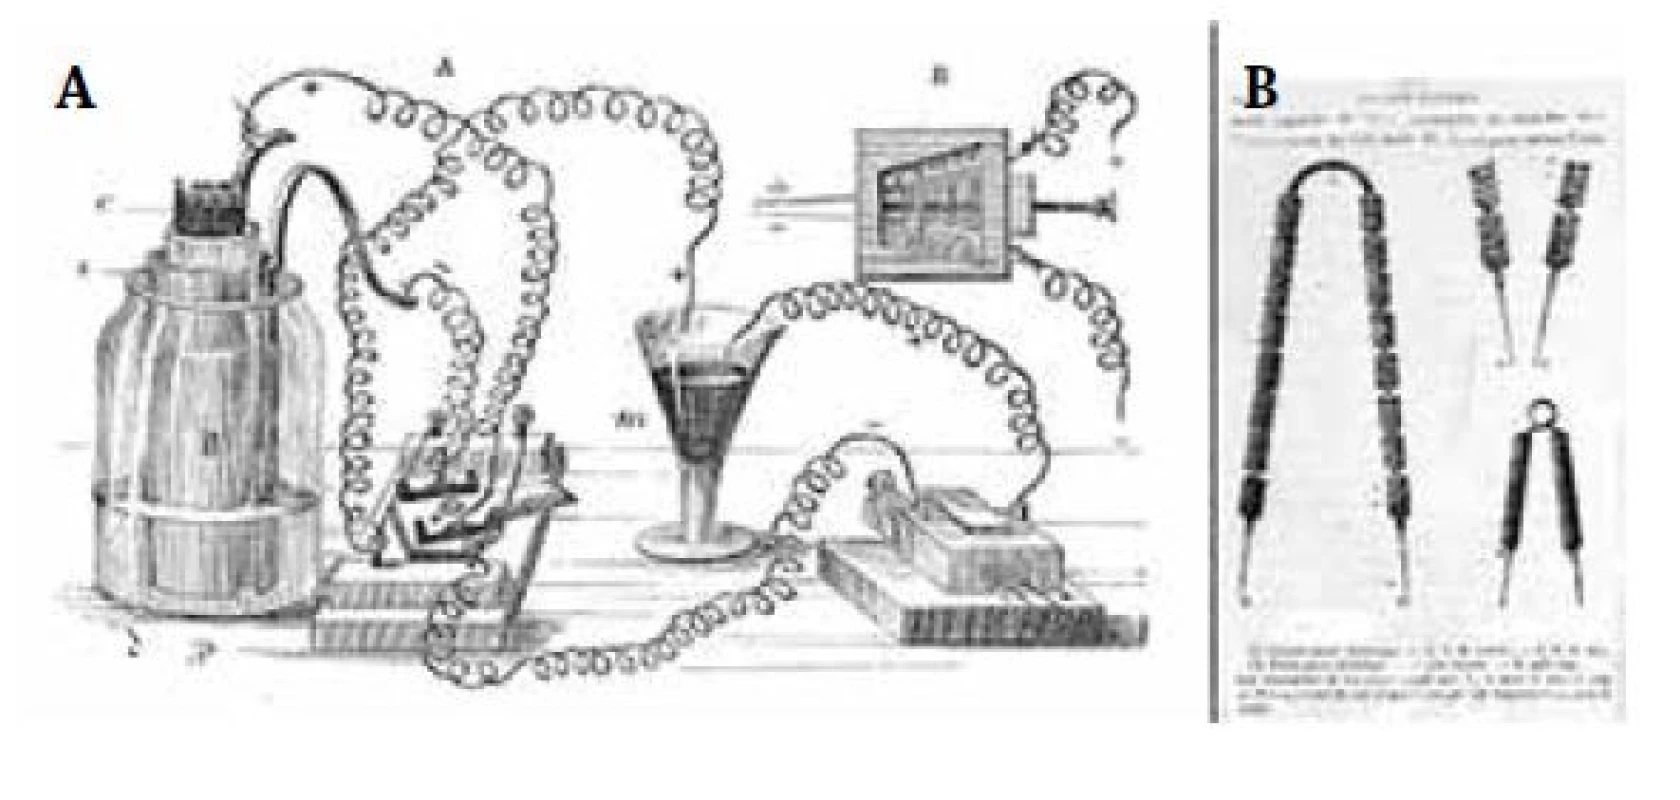 Elektrické zařízení, které používal C. Bernard ke svým pokusům
(a) schéma, (b) elektrody. Zdroj: Welcome images (použito s licencí CC BY 4.0)